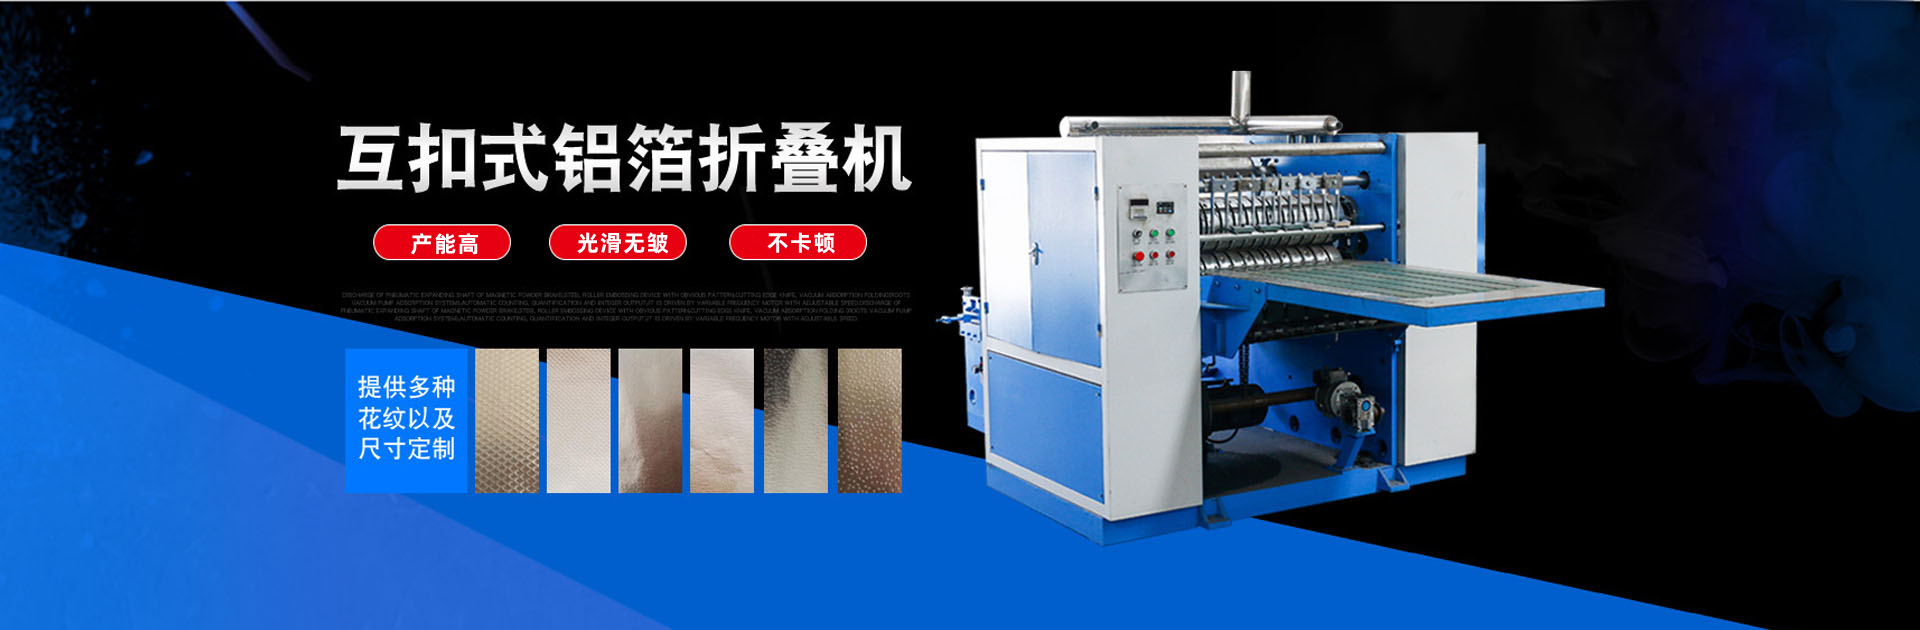 Lianyungang Zhixinjie Machinery Co., Ltd-10年专注研发生产